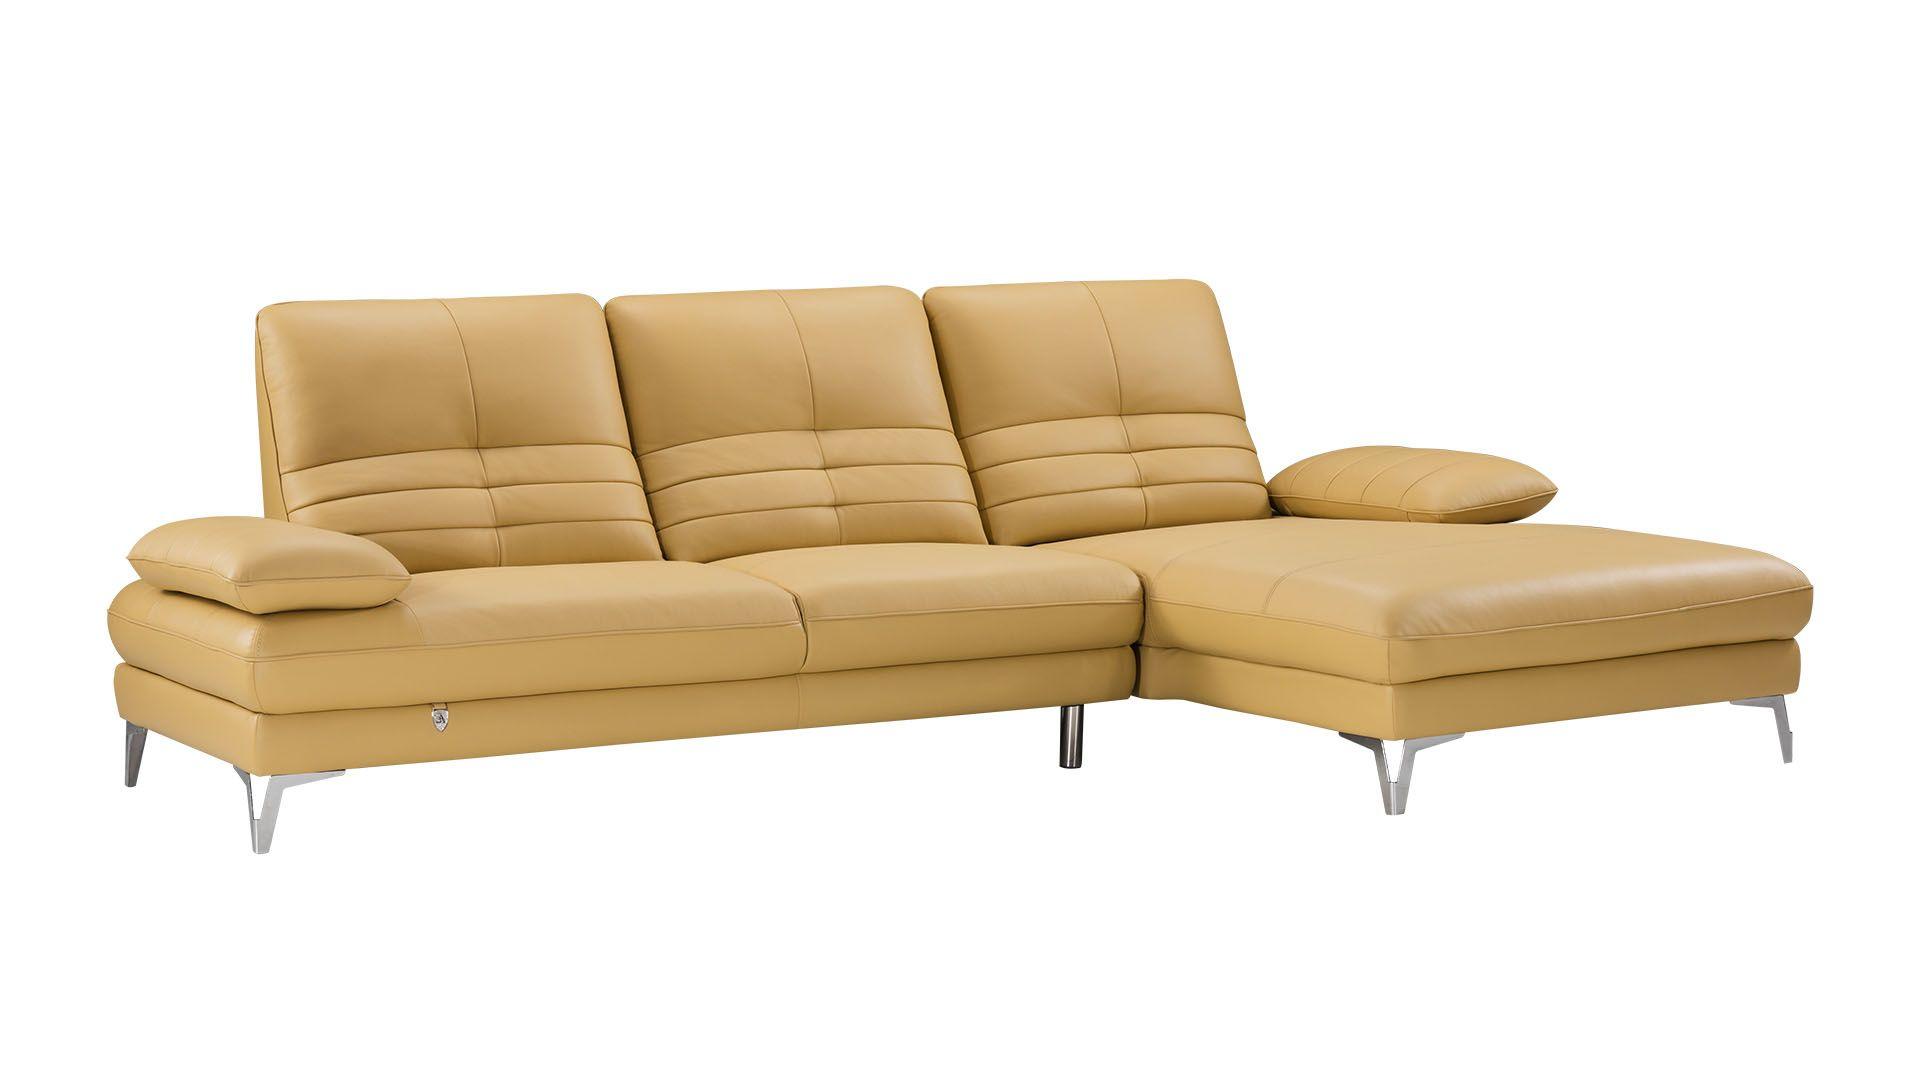 Contemporary, Modern Sectional Sofa EK-L070-YO EK-L070R-YO in Yellow Italian Leather